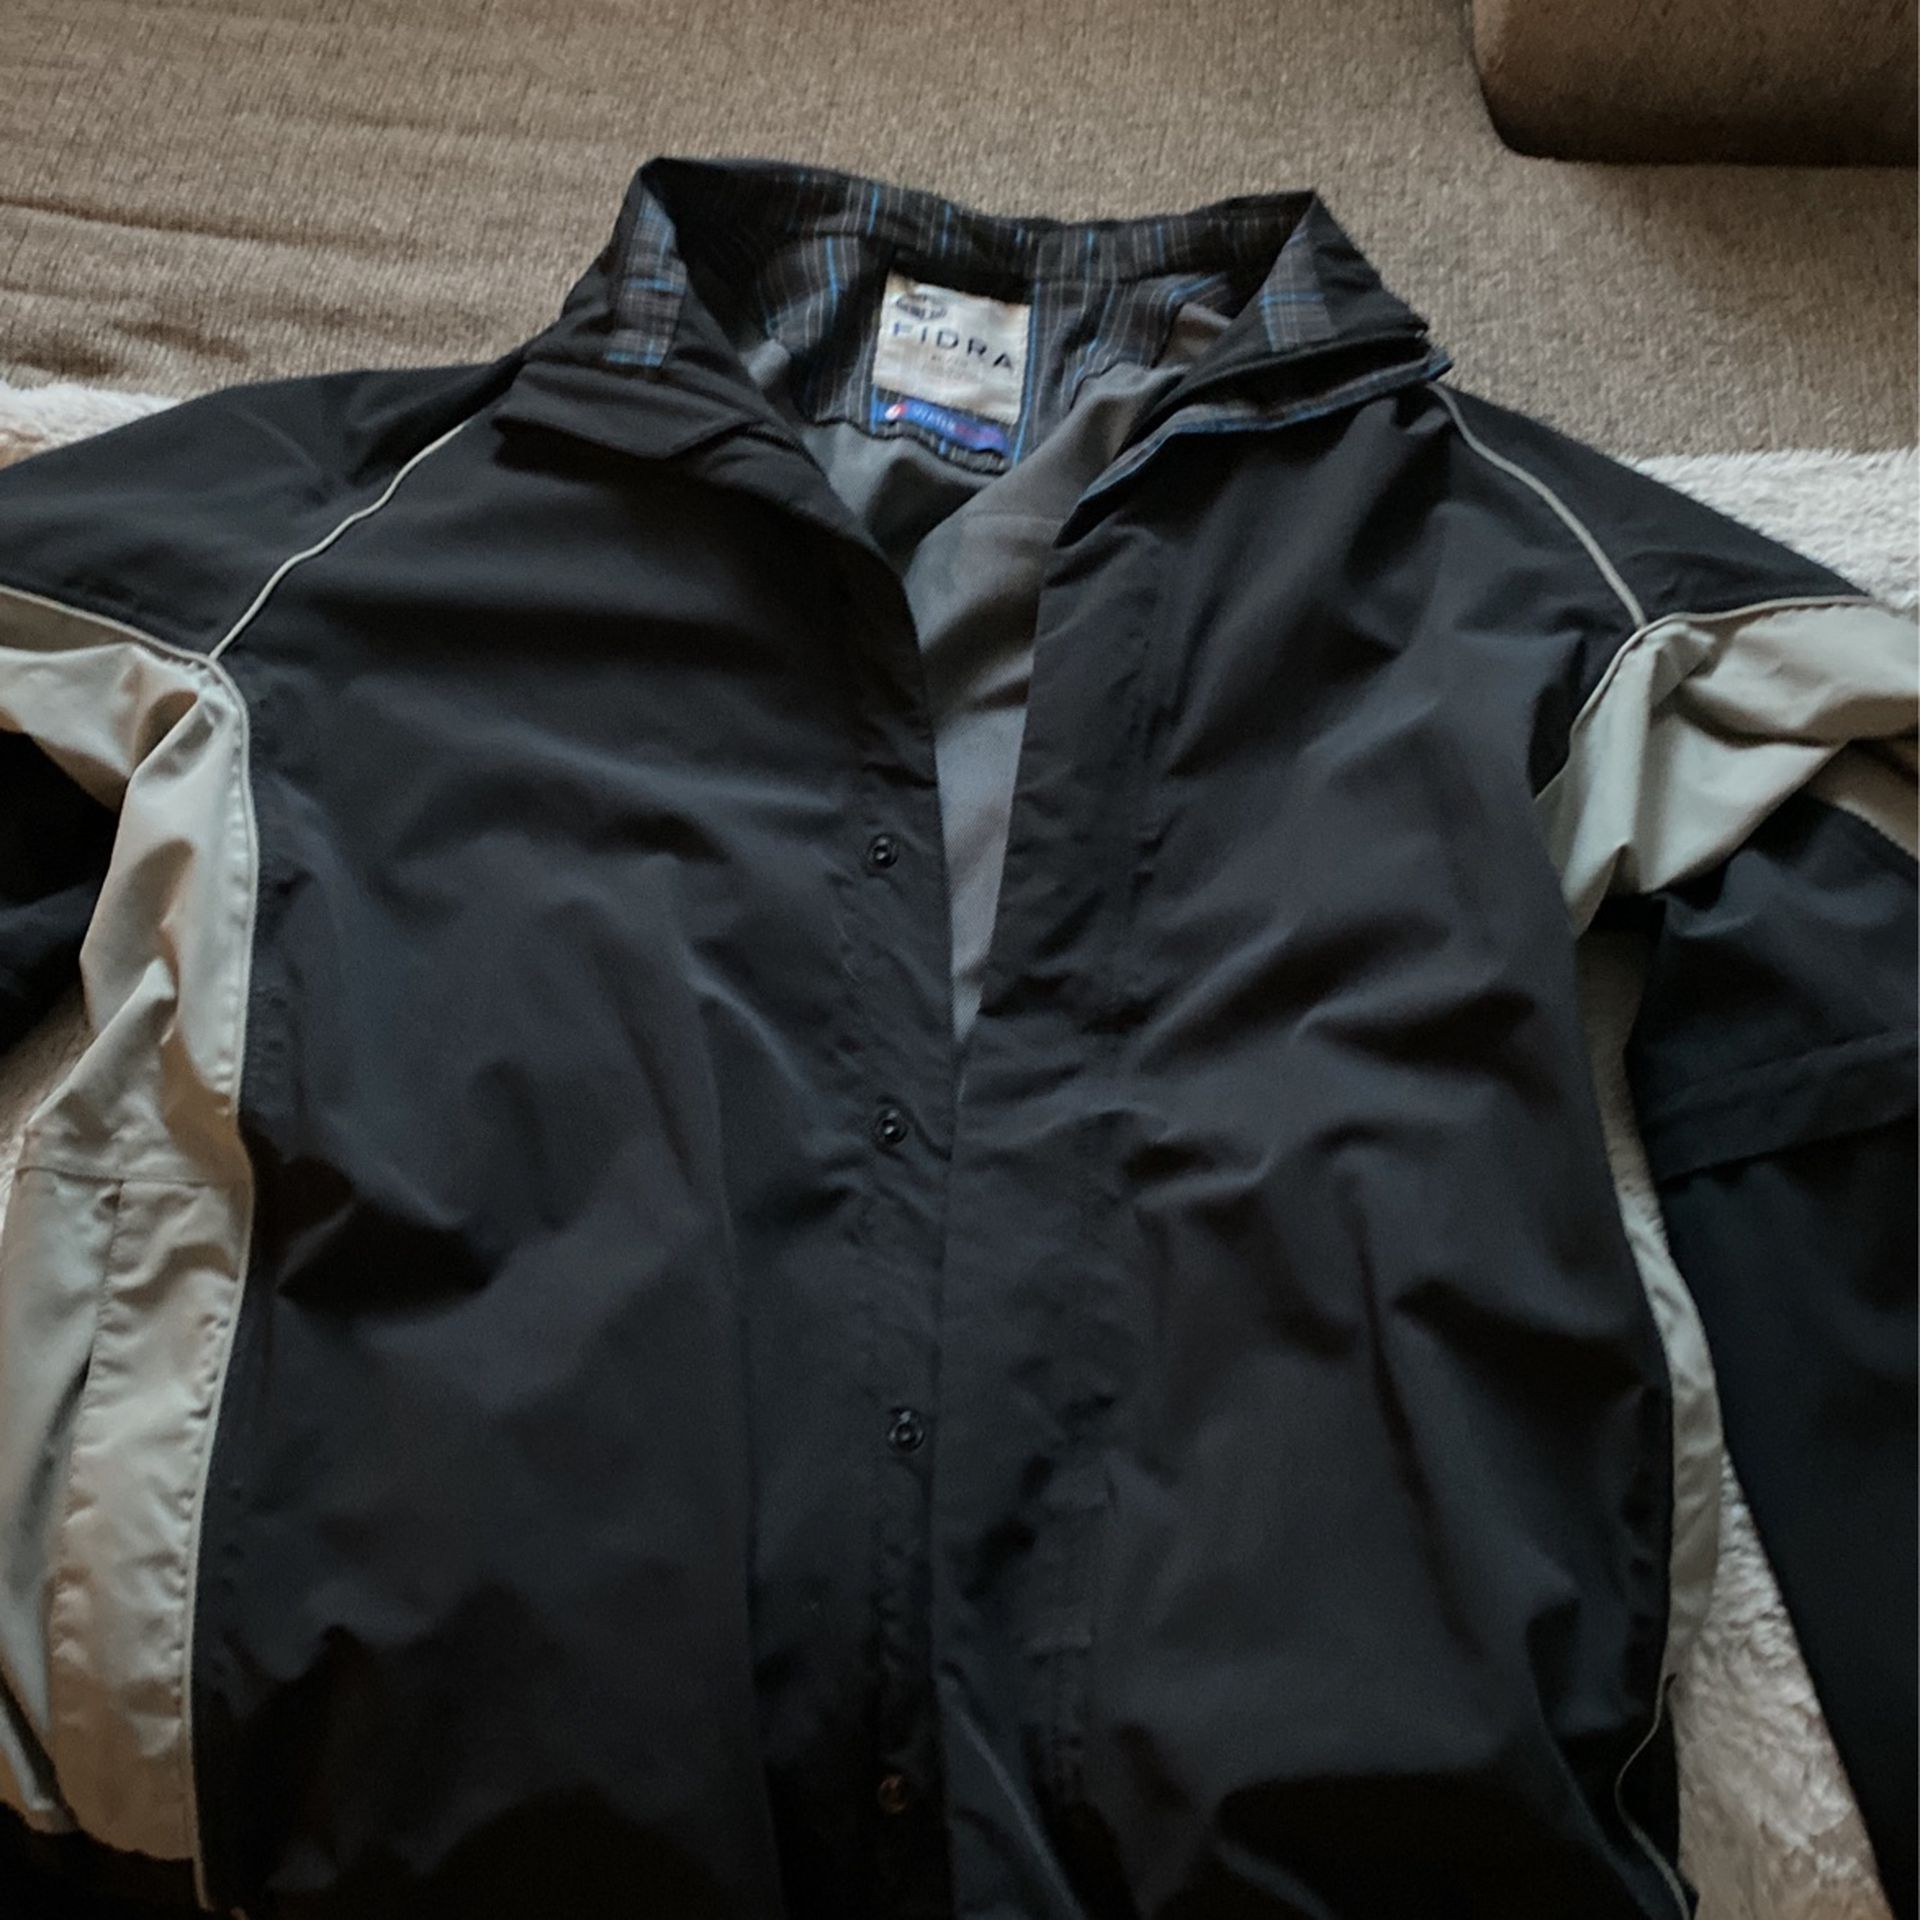 Fidra Light Jacket Waterproof 